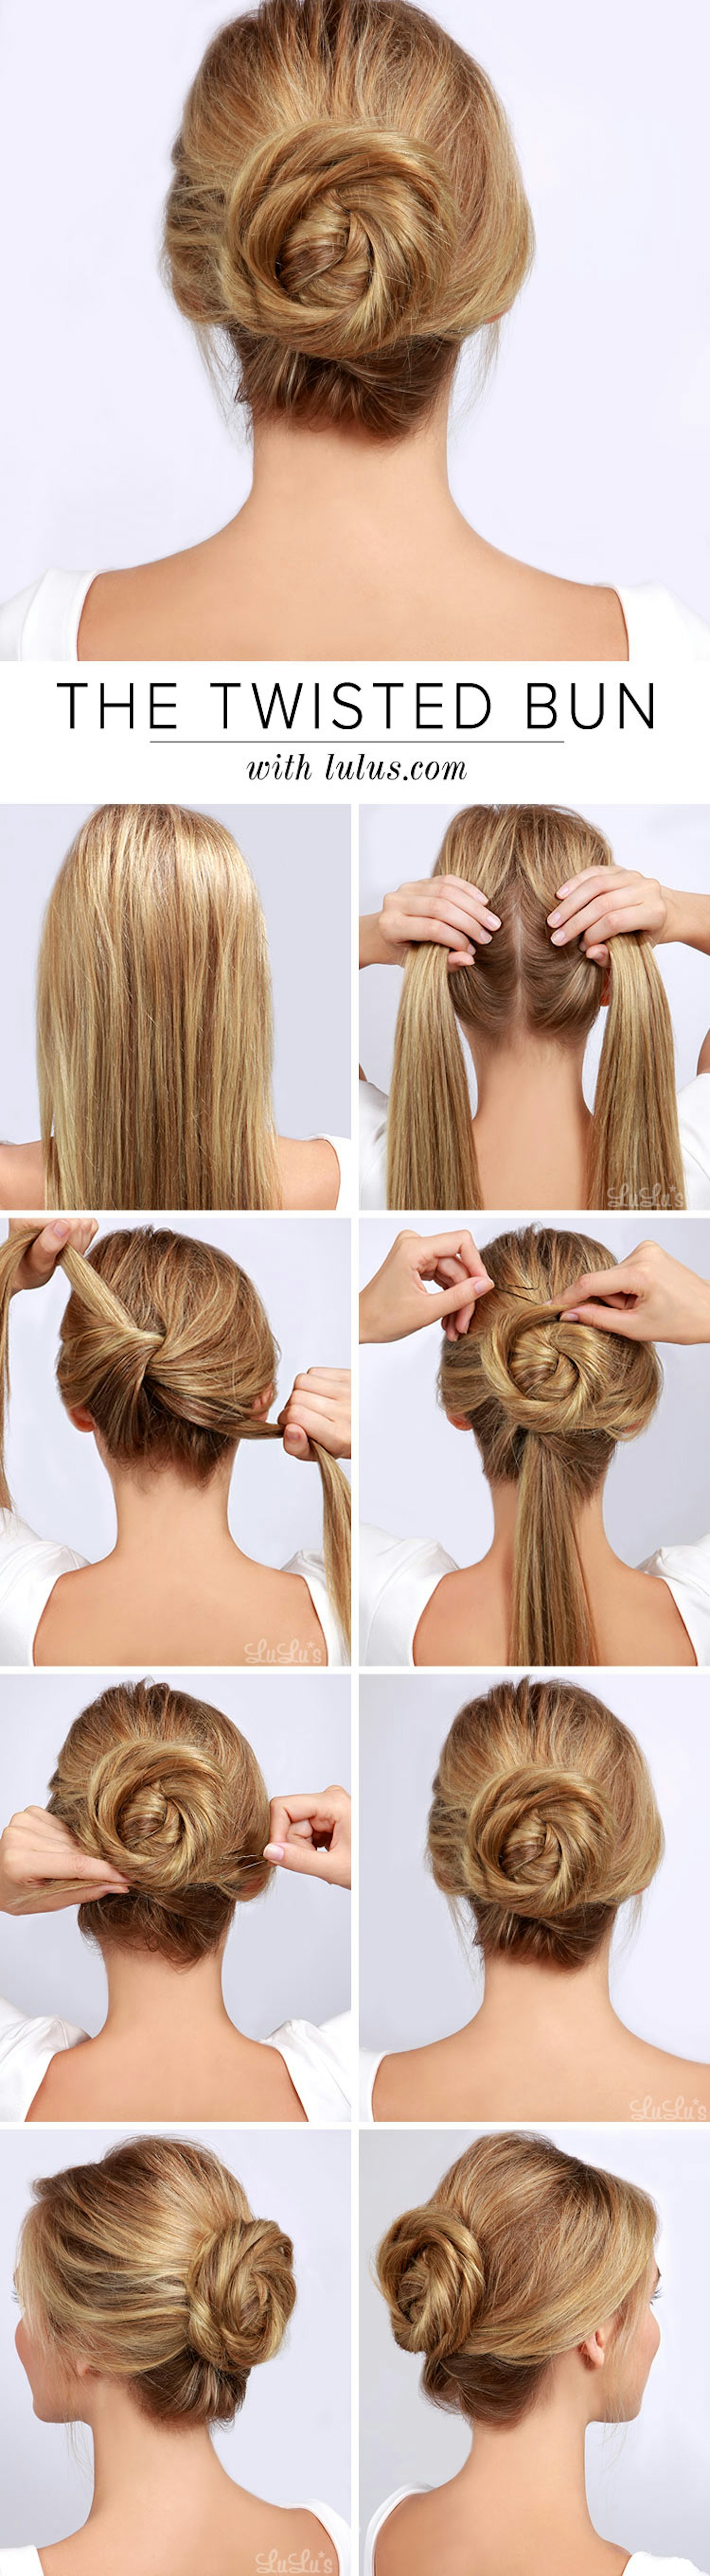 Lulus.com-twisted-bun-Grazia-long-hair-updo-tutorial-Pinterest